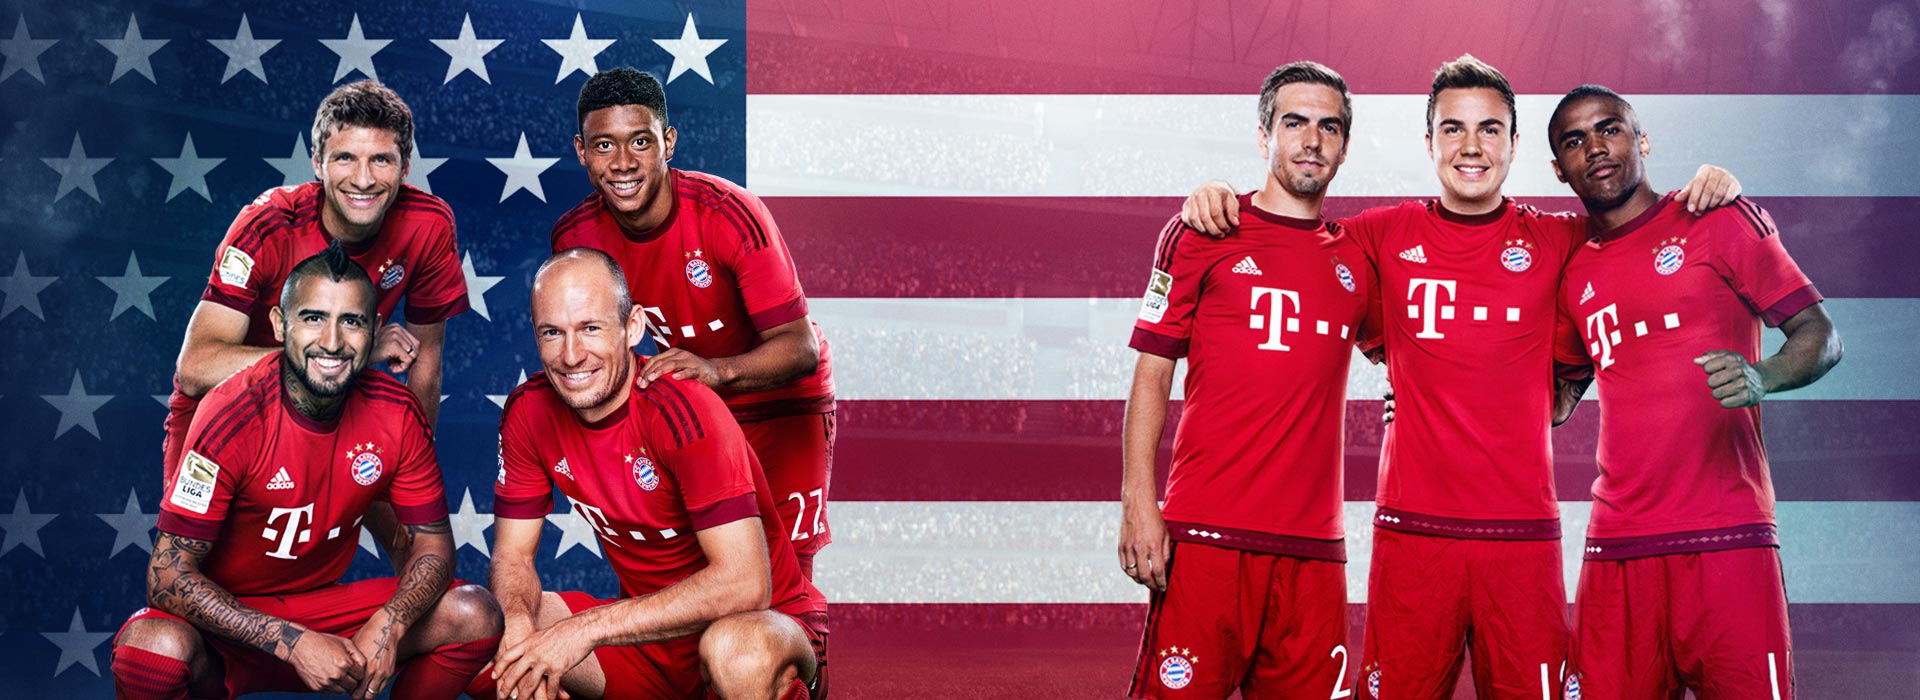 Paulaner Fanträume Begleite den FC Bayern in die USA